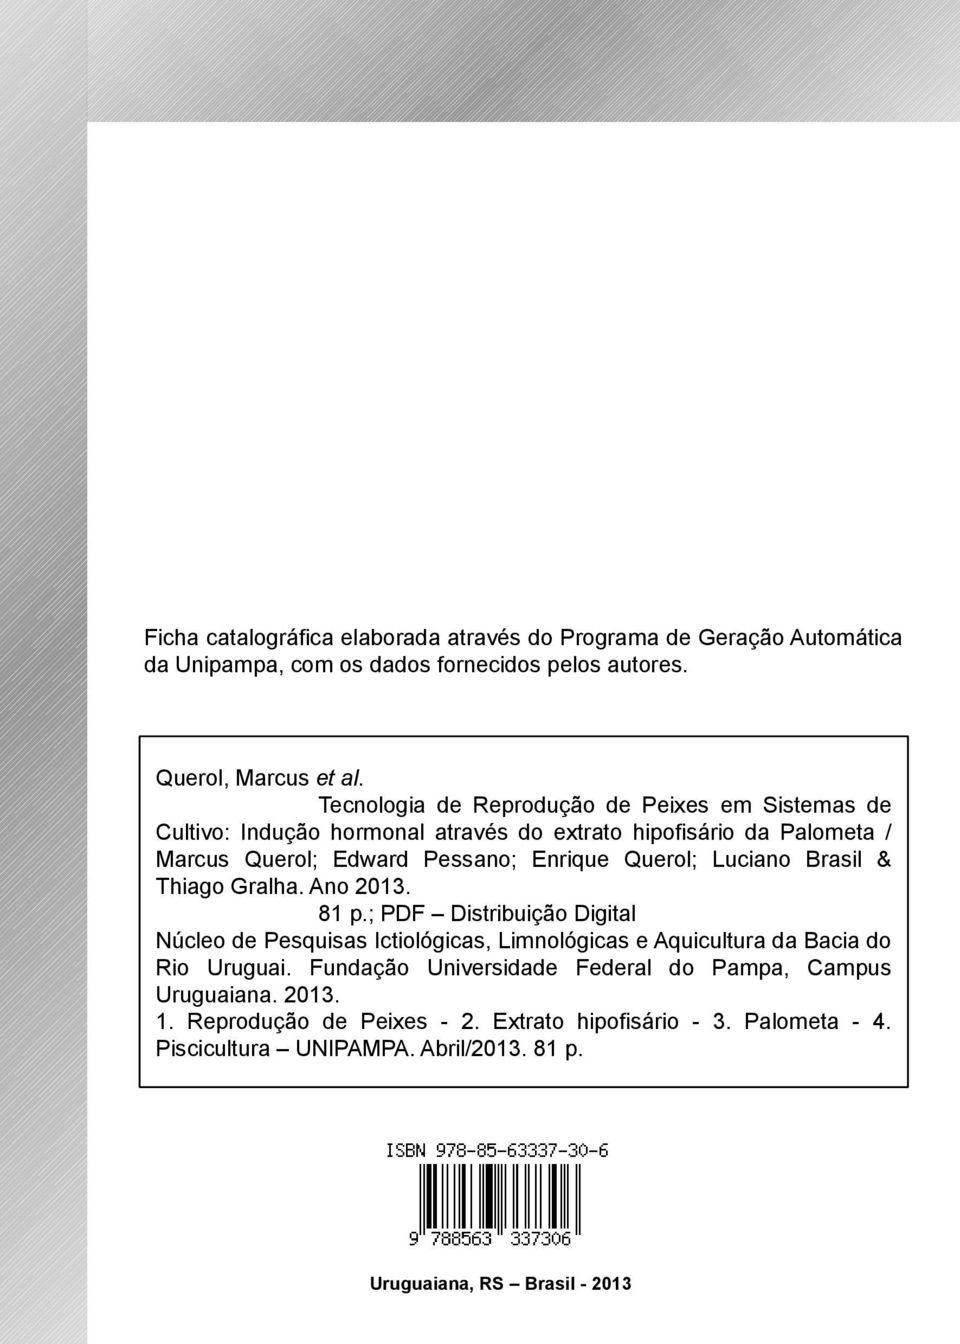 Luciano Brasil & Thiago Gralha. Ano 2013. 81 p.; PDF Distribuição Digital Núcleo de Pesquisas Ictiológicas, Limnológicas e Aquicultura da Bacia do Rio Uruguai.